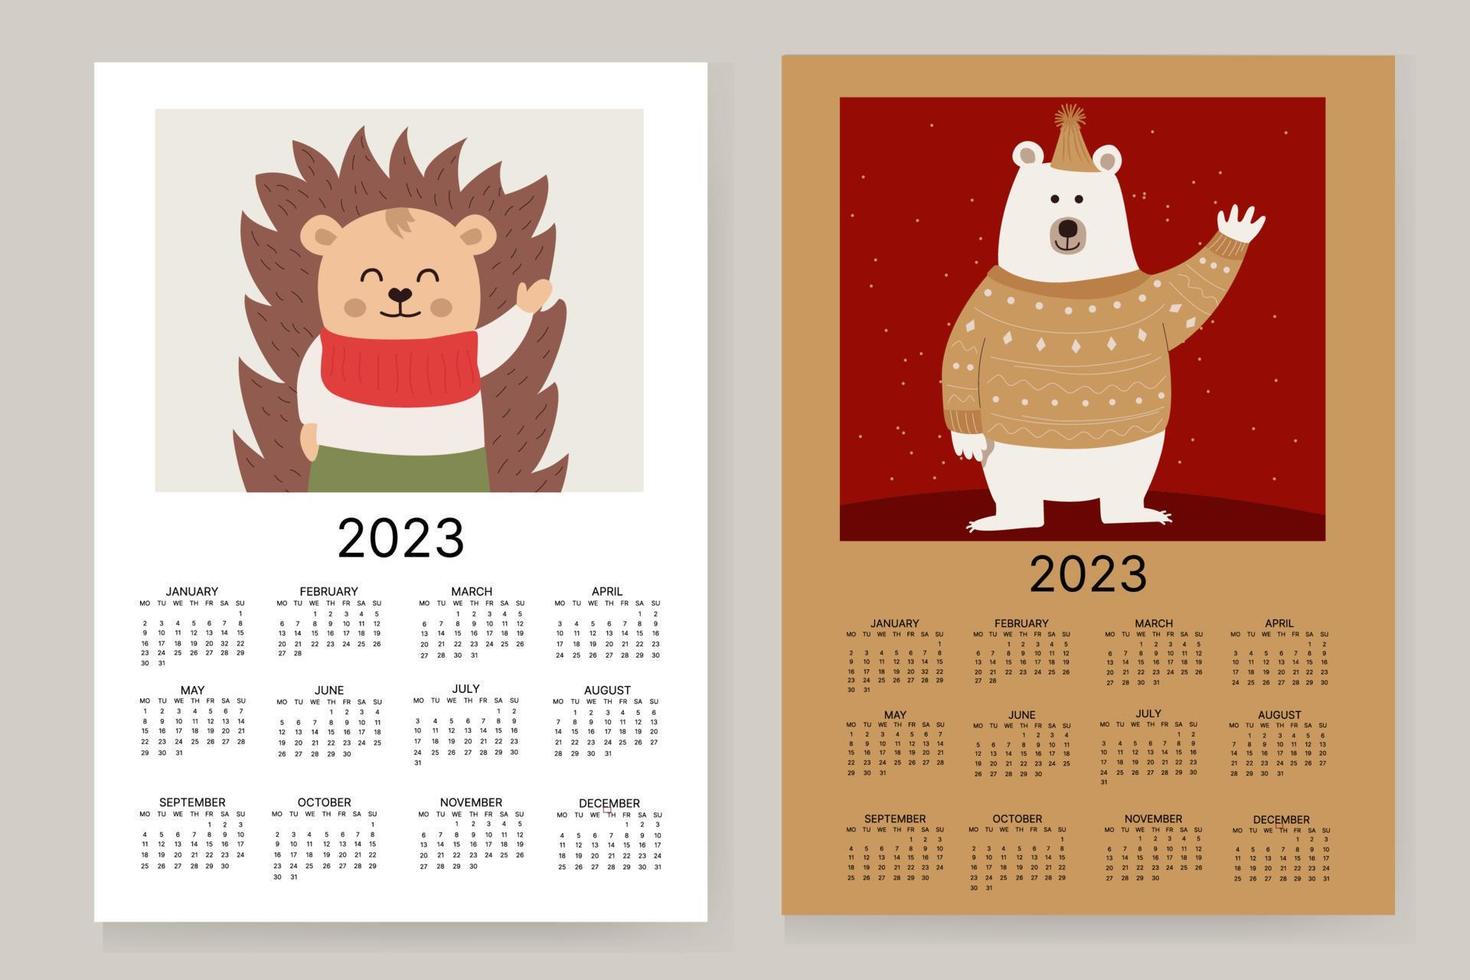 ilustração vetorial do ano civil de 2023. a semana começa no domingo. com uma foto de um urso e um ouriço fofo. vetor